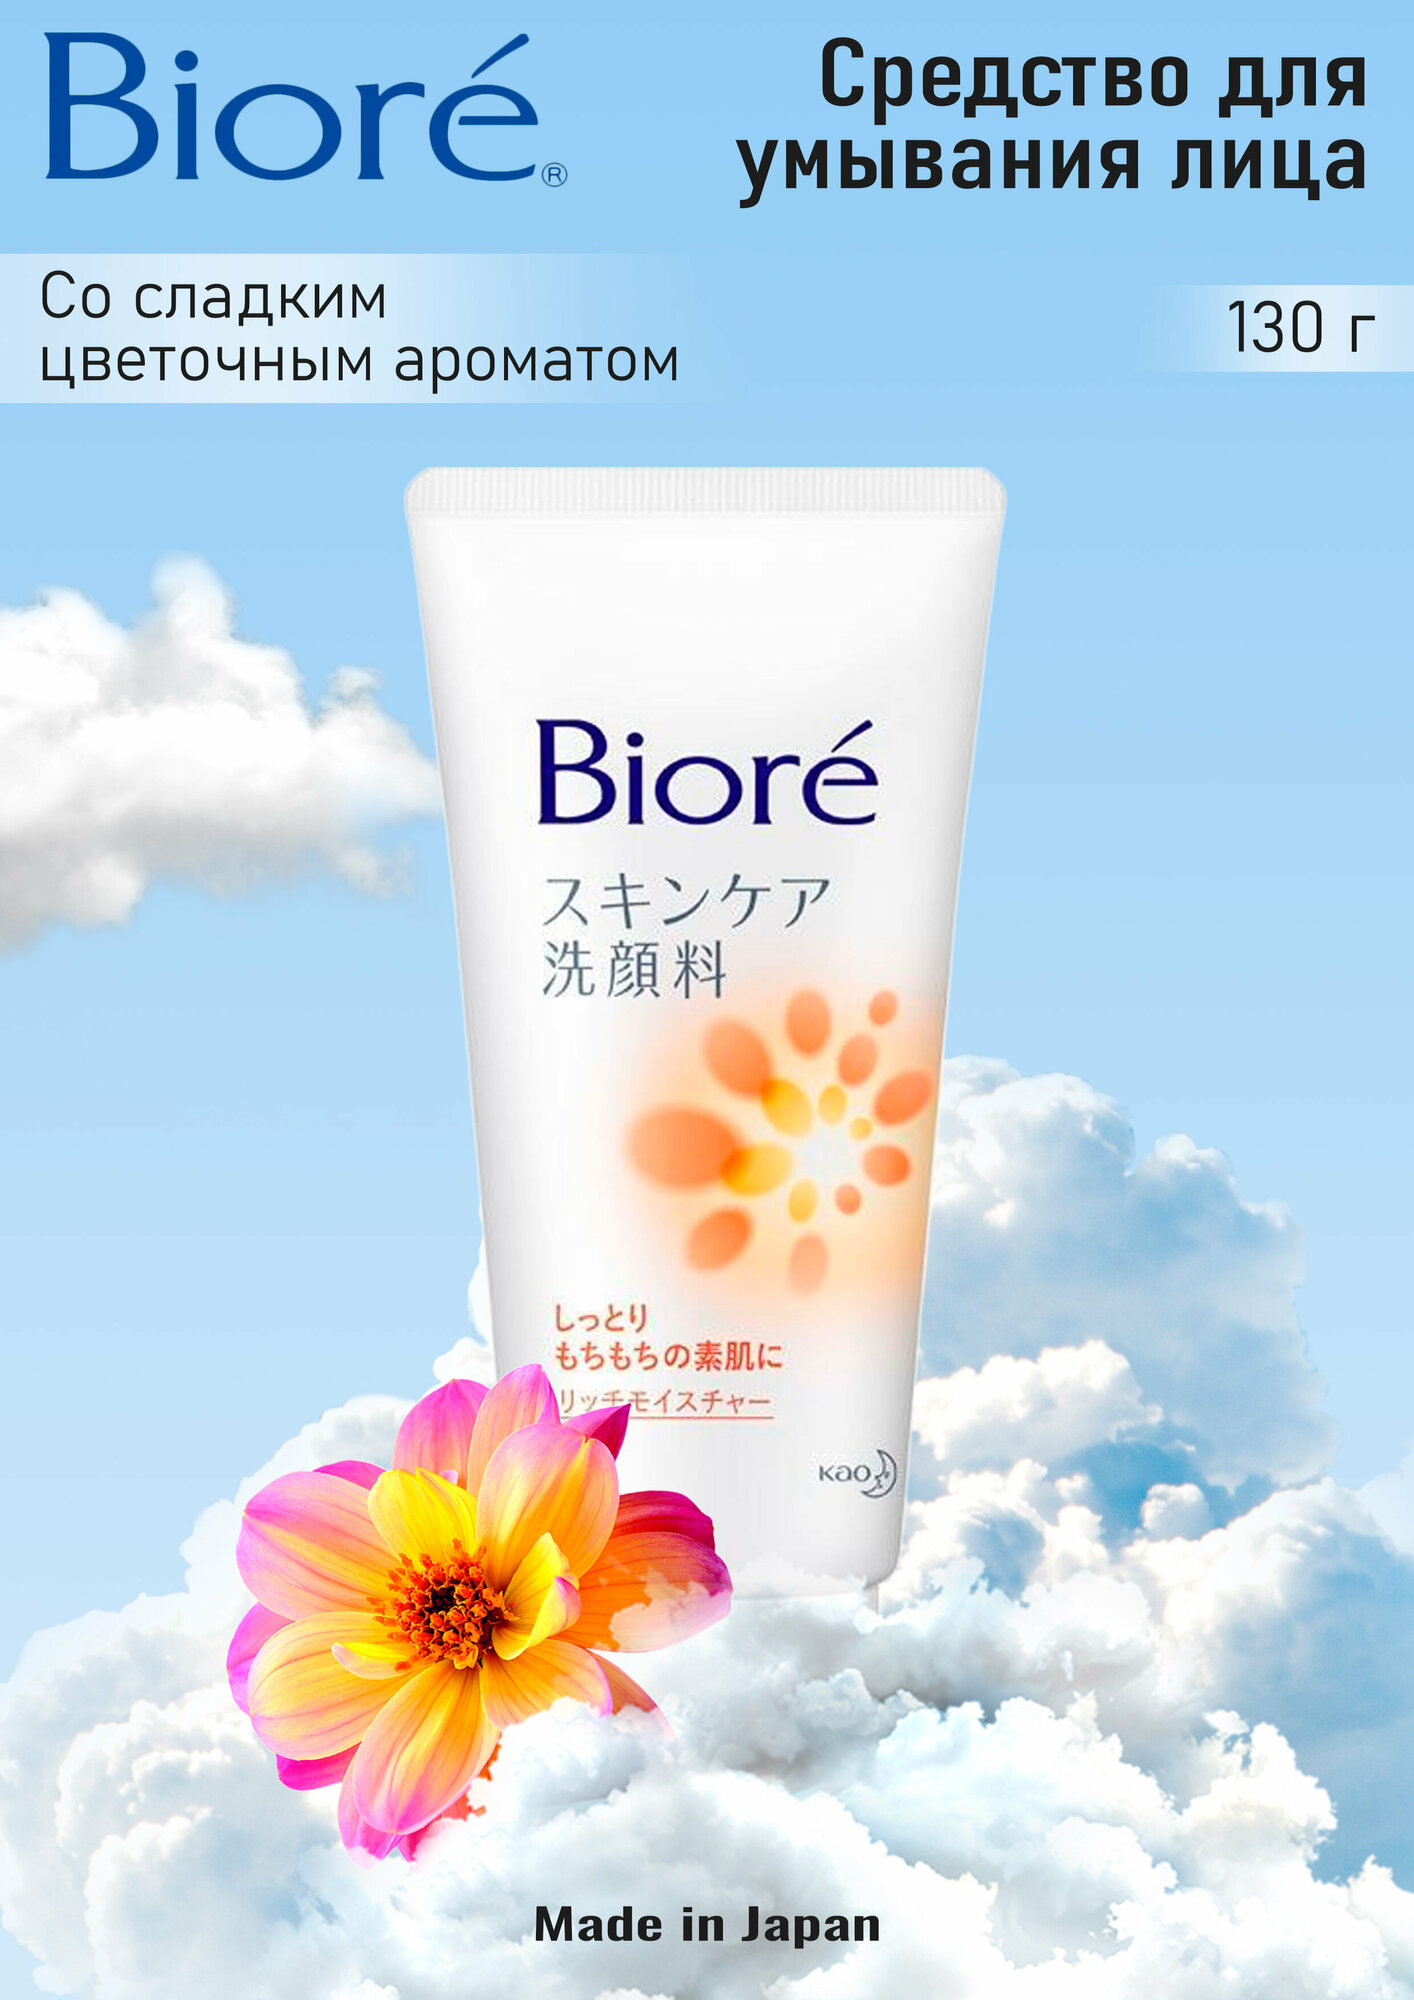 КАО "Biore" Средство для умывания лица со сладким цветочным ароматом, 130 гр.